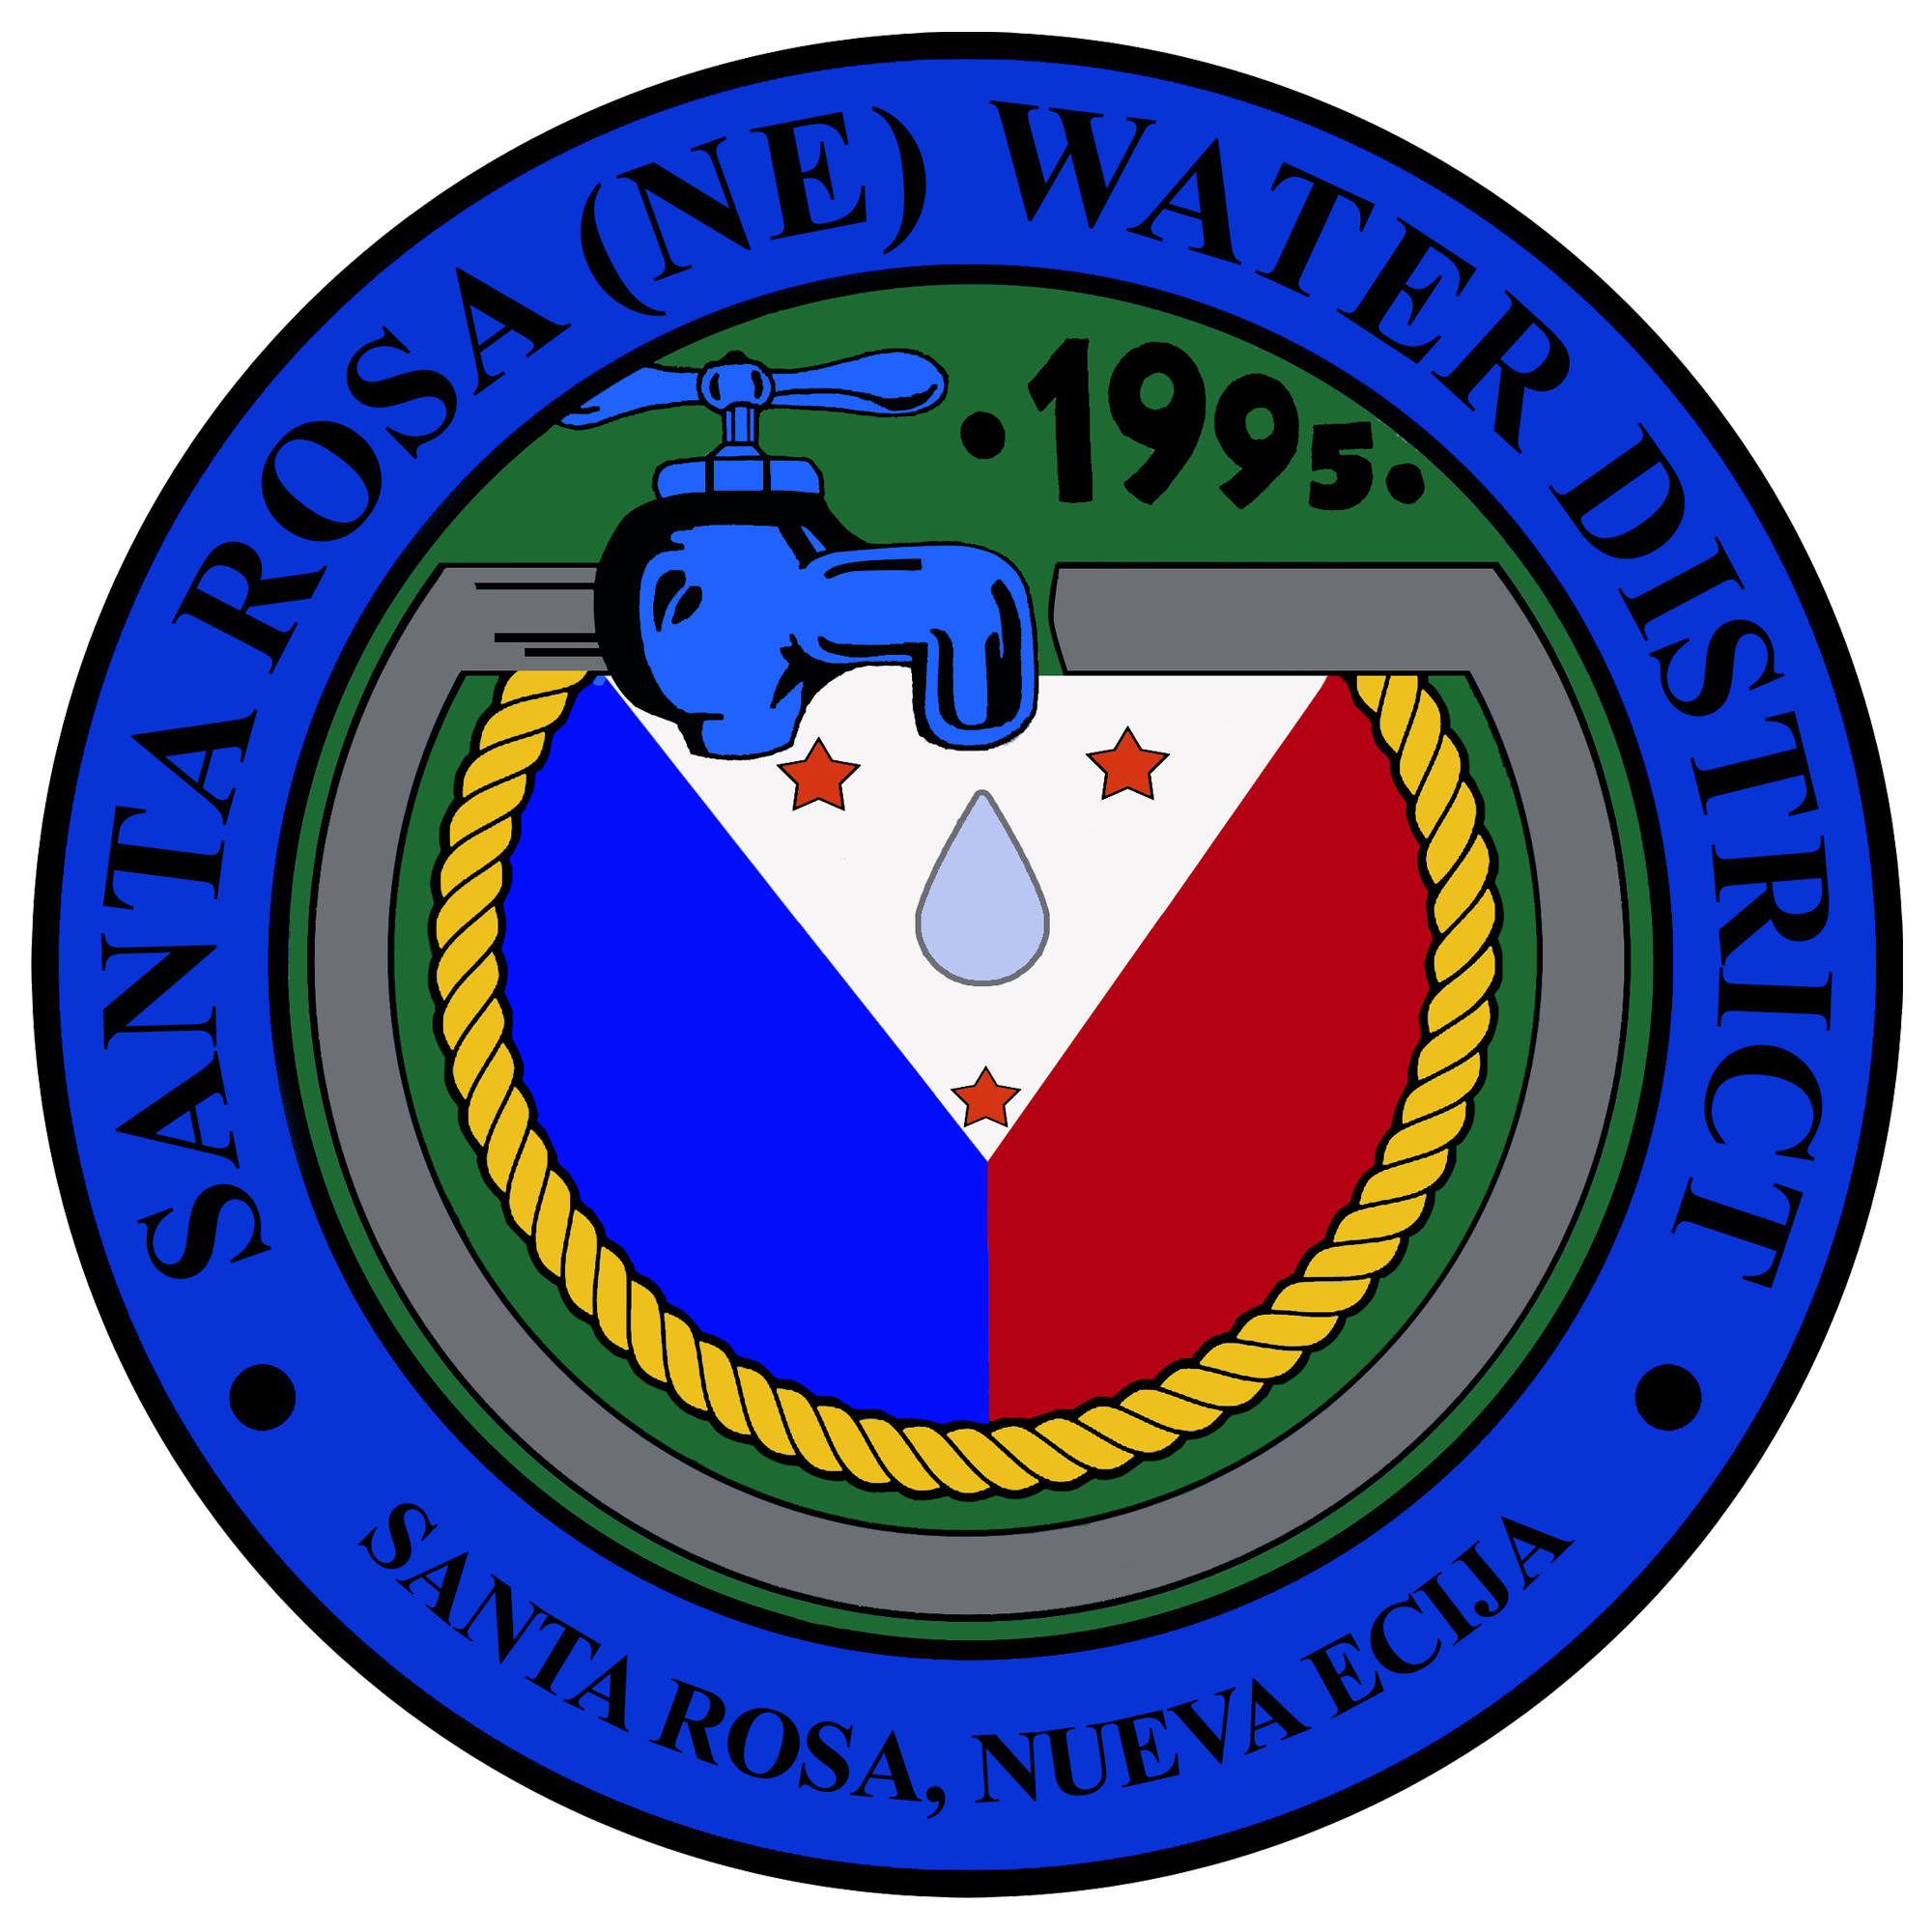 SANTA ROSA WATER DISTRICT